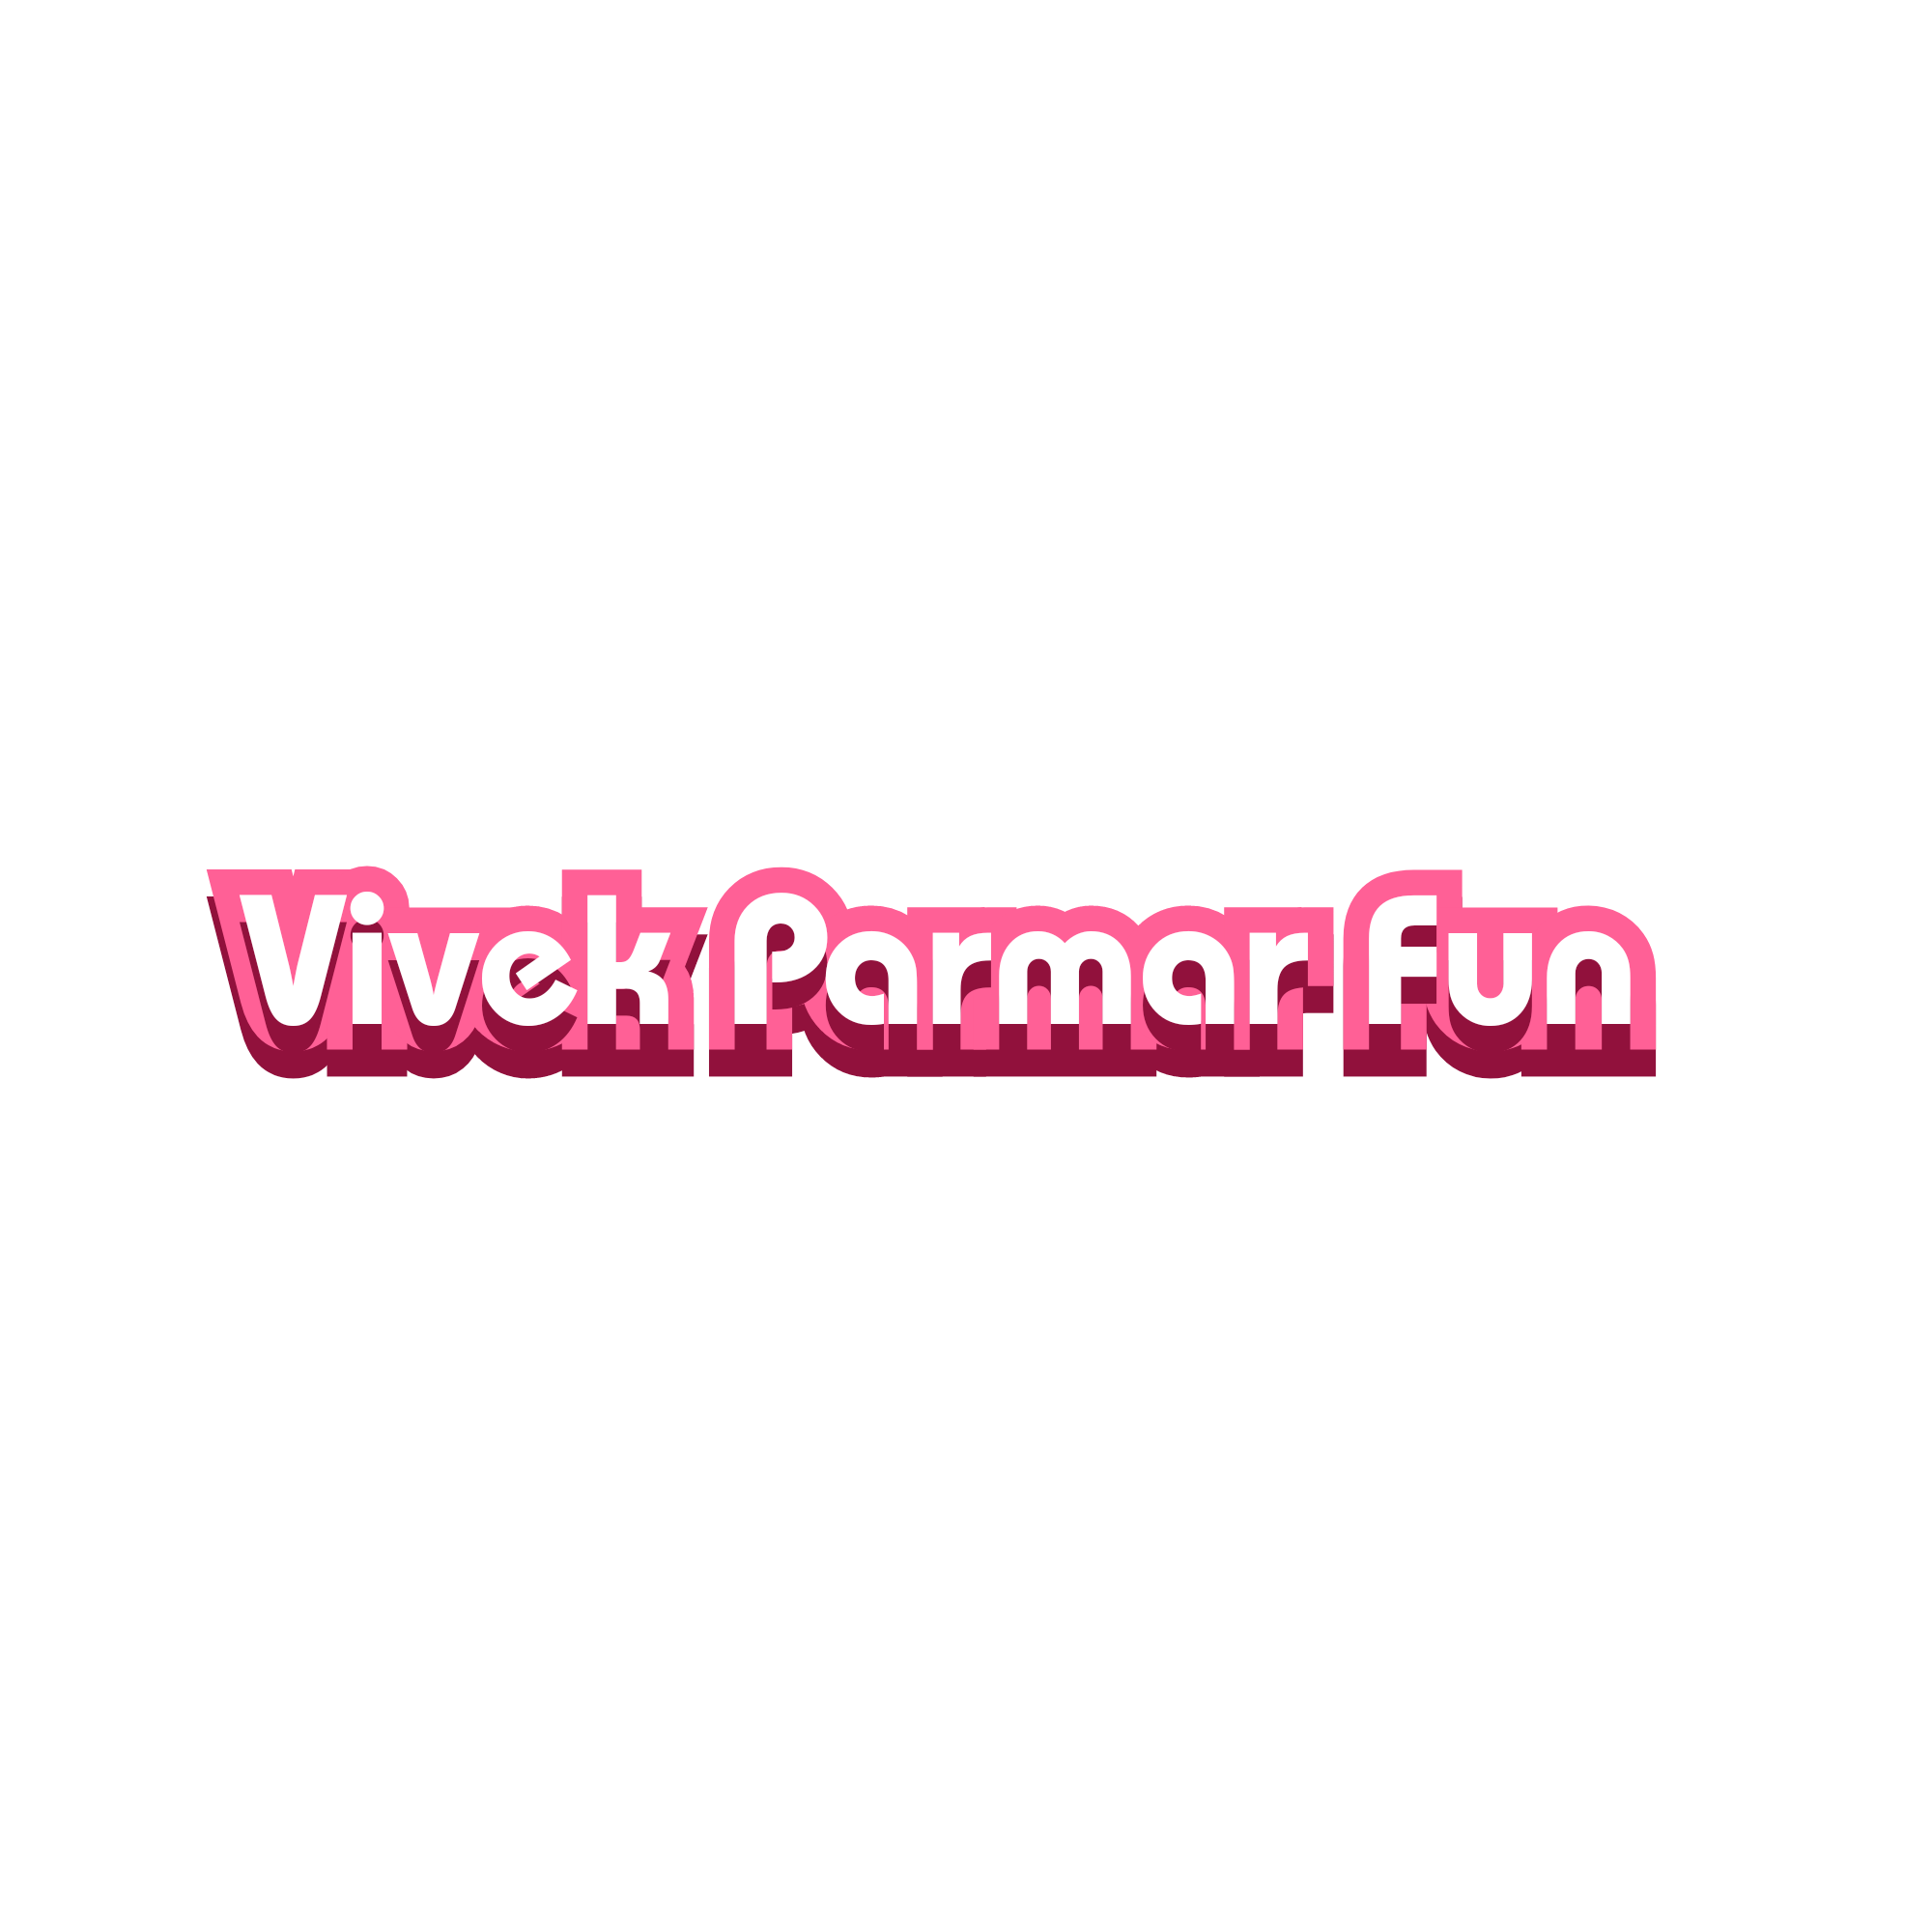 Vivek Parmar Fun